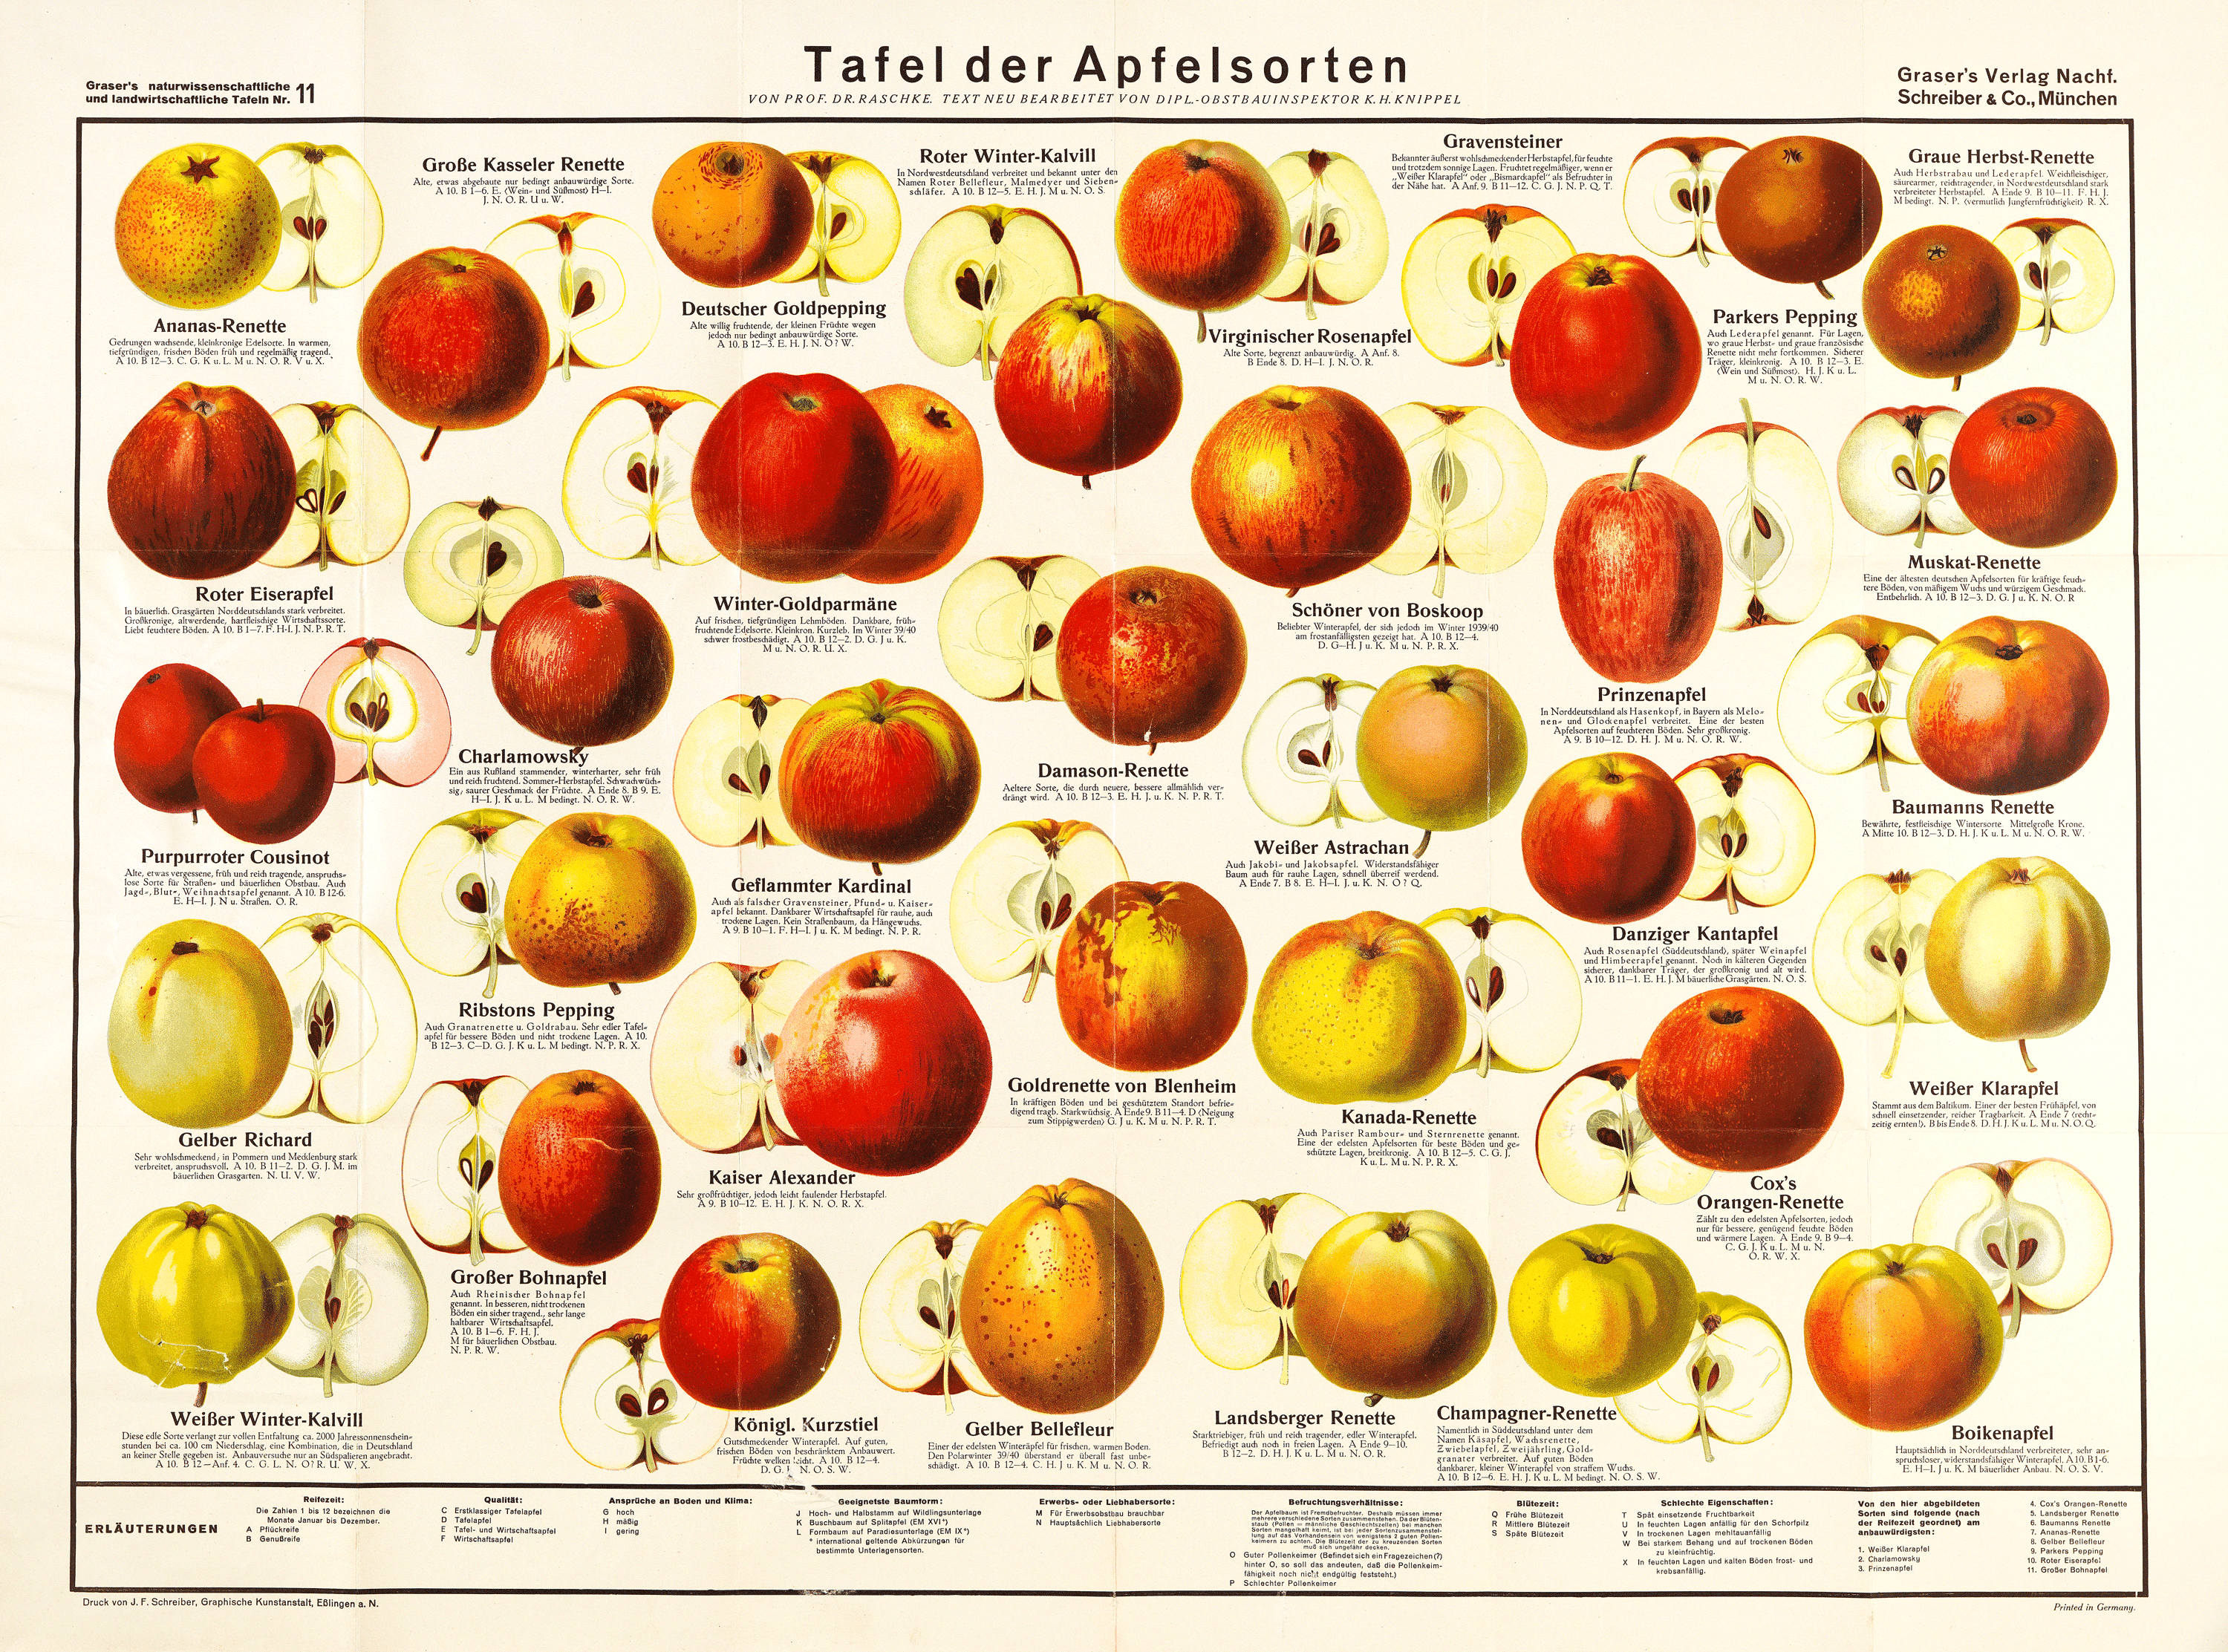 Tafel der Apfelsorten